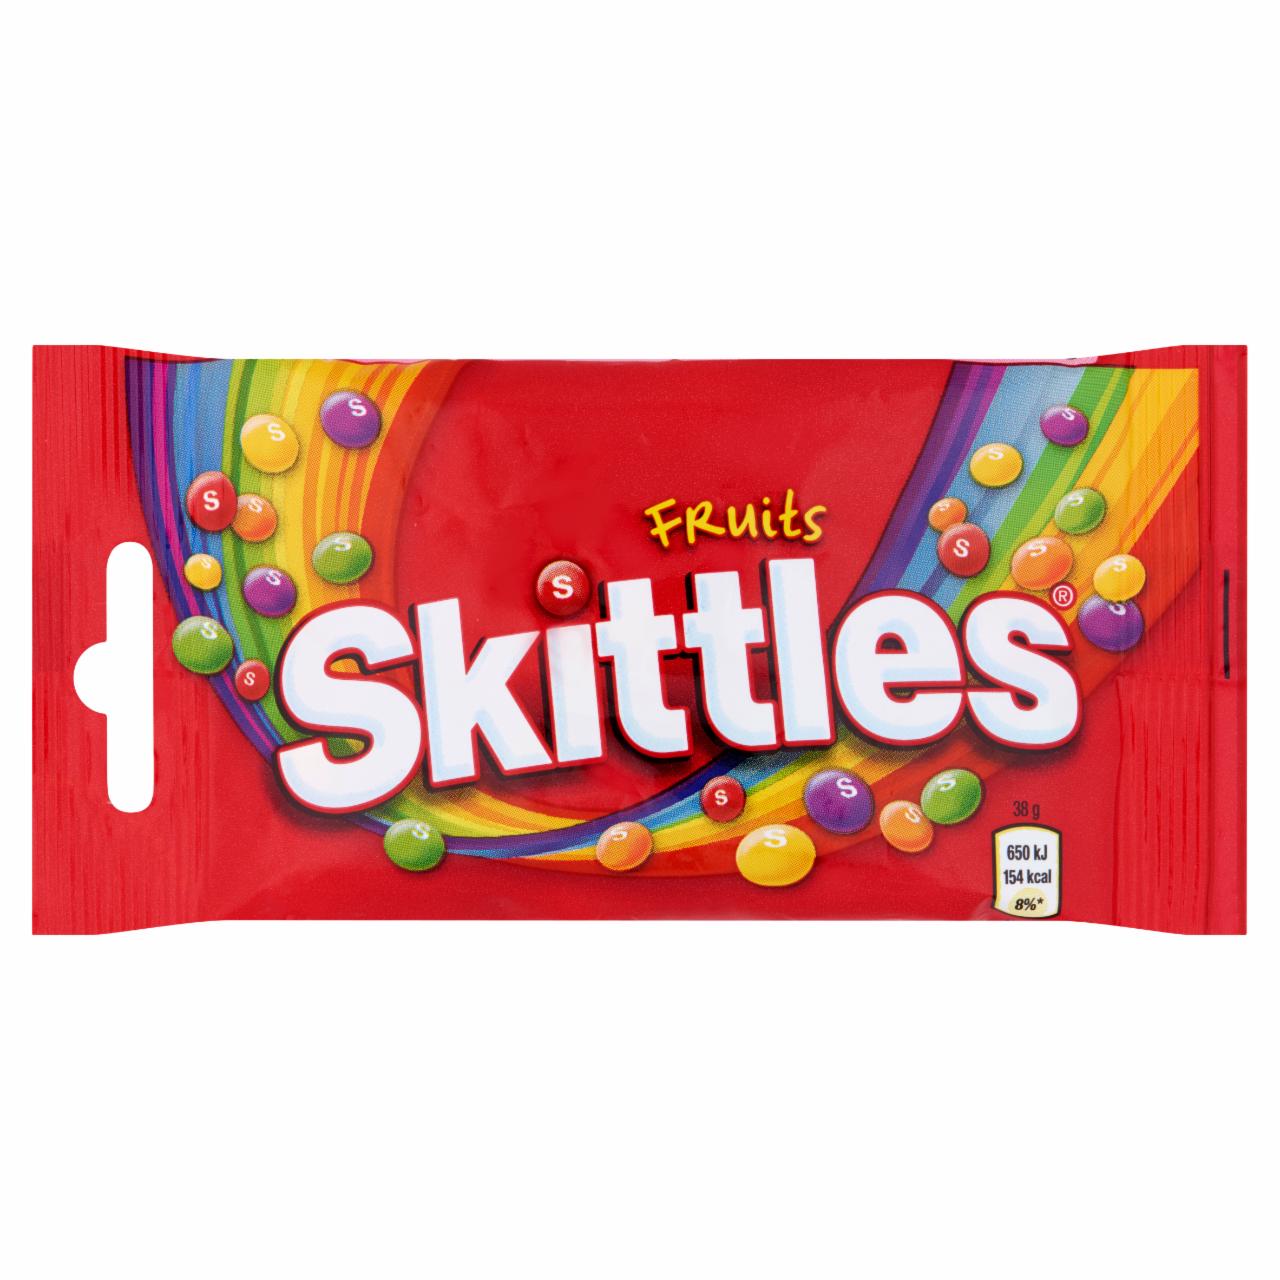 Képek - Skittles Fruits gyümölcsízű cukordrazsé ropogós cukormázban 38 g